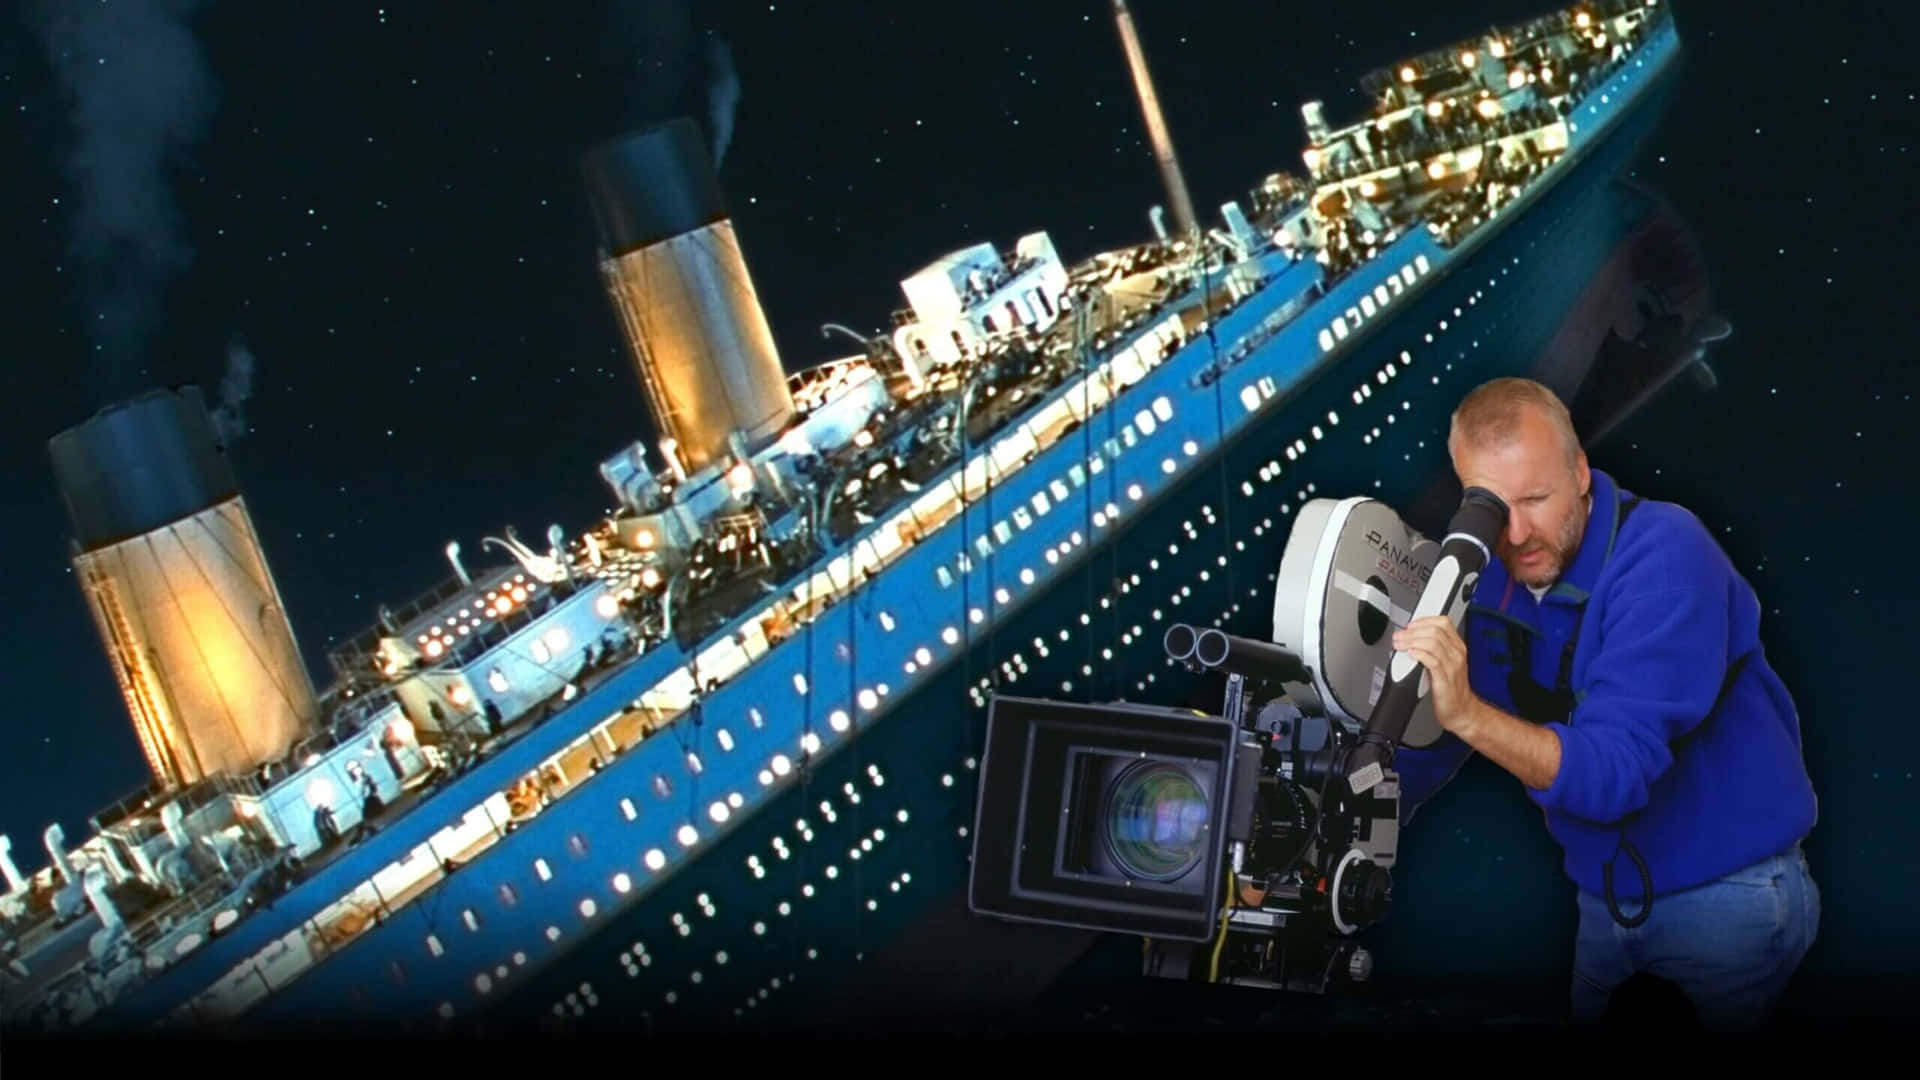 Athuske Dem, Der Mistede Deres Liv I Titanic-tragedien.